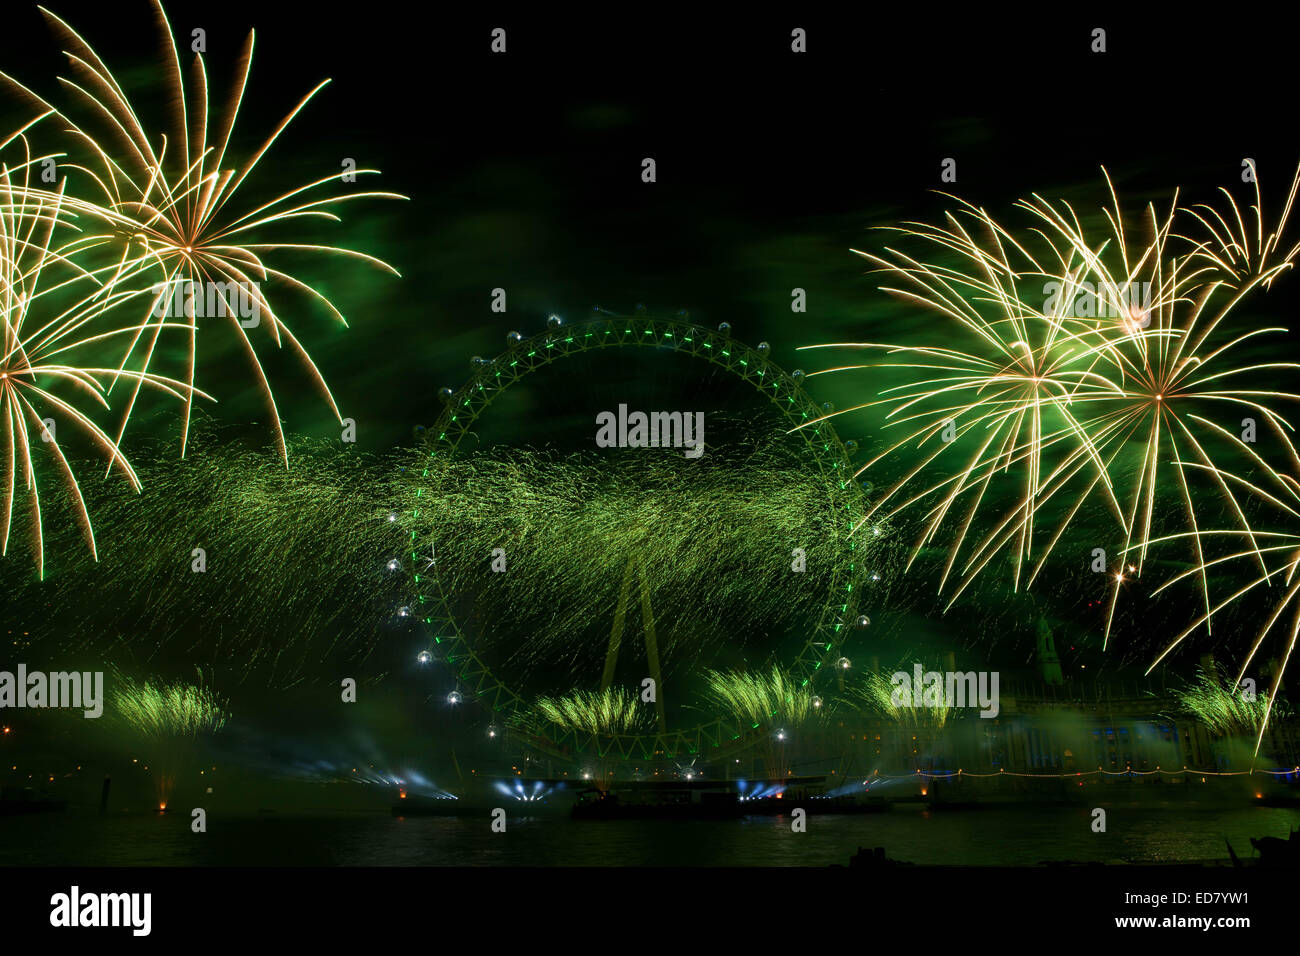 Le centre de Londres, UK 1 Janvier 2015 pyrotechnie artifice du London Eye inaugure une nouvelle année à célébrer la nouvelle année avec l'assemblée annuelle d'artifice Crédit : Richard Soans/Alamy Live News Banque D'Images